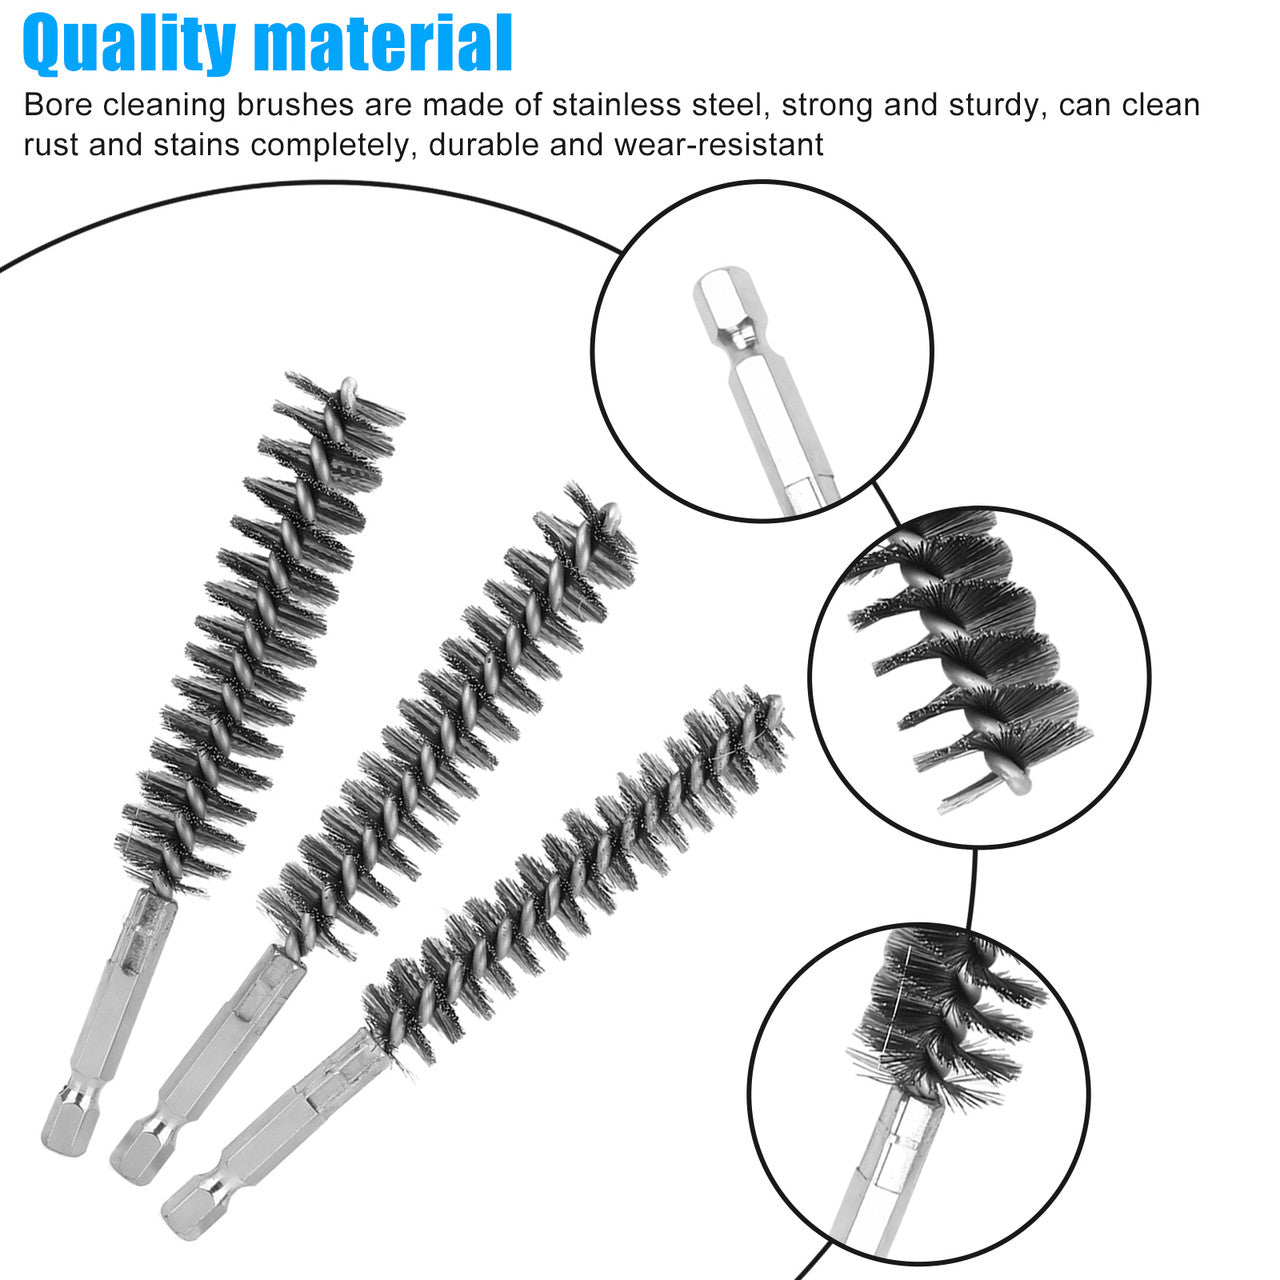 6 Packs Stainless Steel Bore Brush-Hex Shank Twisted Wire Bore Brushes (8MM, 10MM, 12MM, 15MM, 17MM, 19MM)